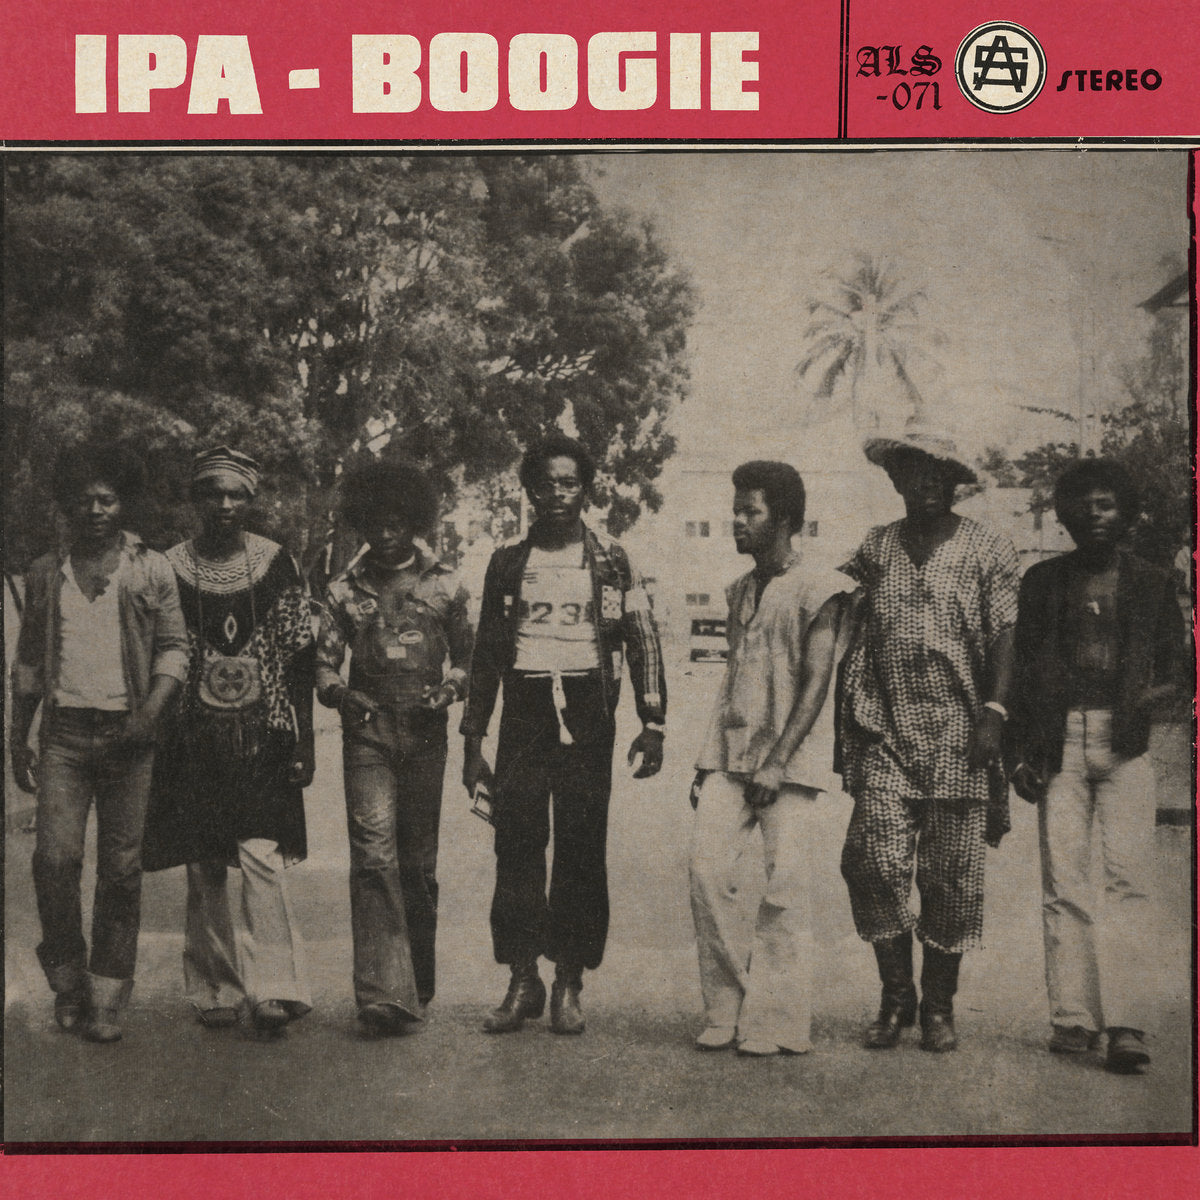 IPA-BOOGIE - Ipa Boogie (Acid Jazz Records Presents....) - LP - Vinyl